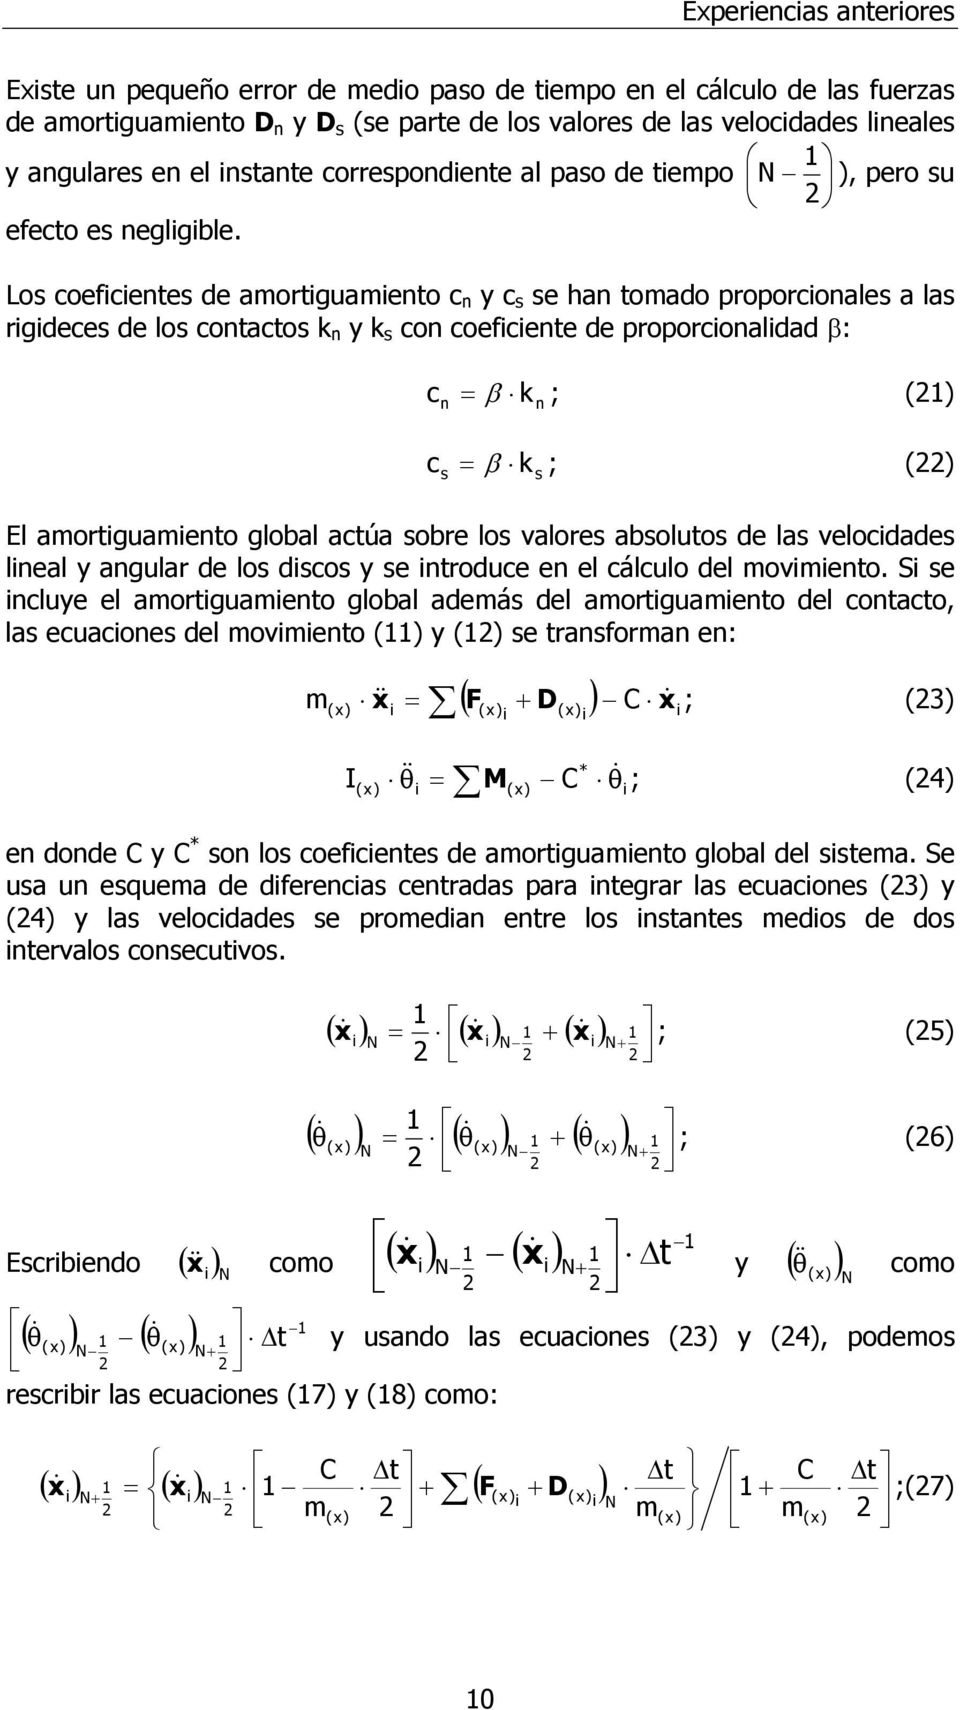 Los coefcetes de amortguameto c y c s se ha tomado proporcoales a las rgdeces de los cotactos y s co coefcete de proporcoaldad β: c = β ; (1) c = β ; () s s El amortguameto global actúa sobre los